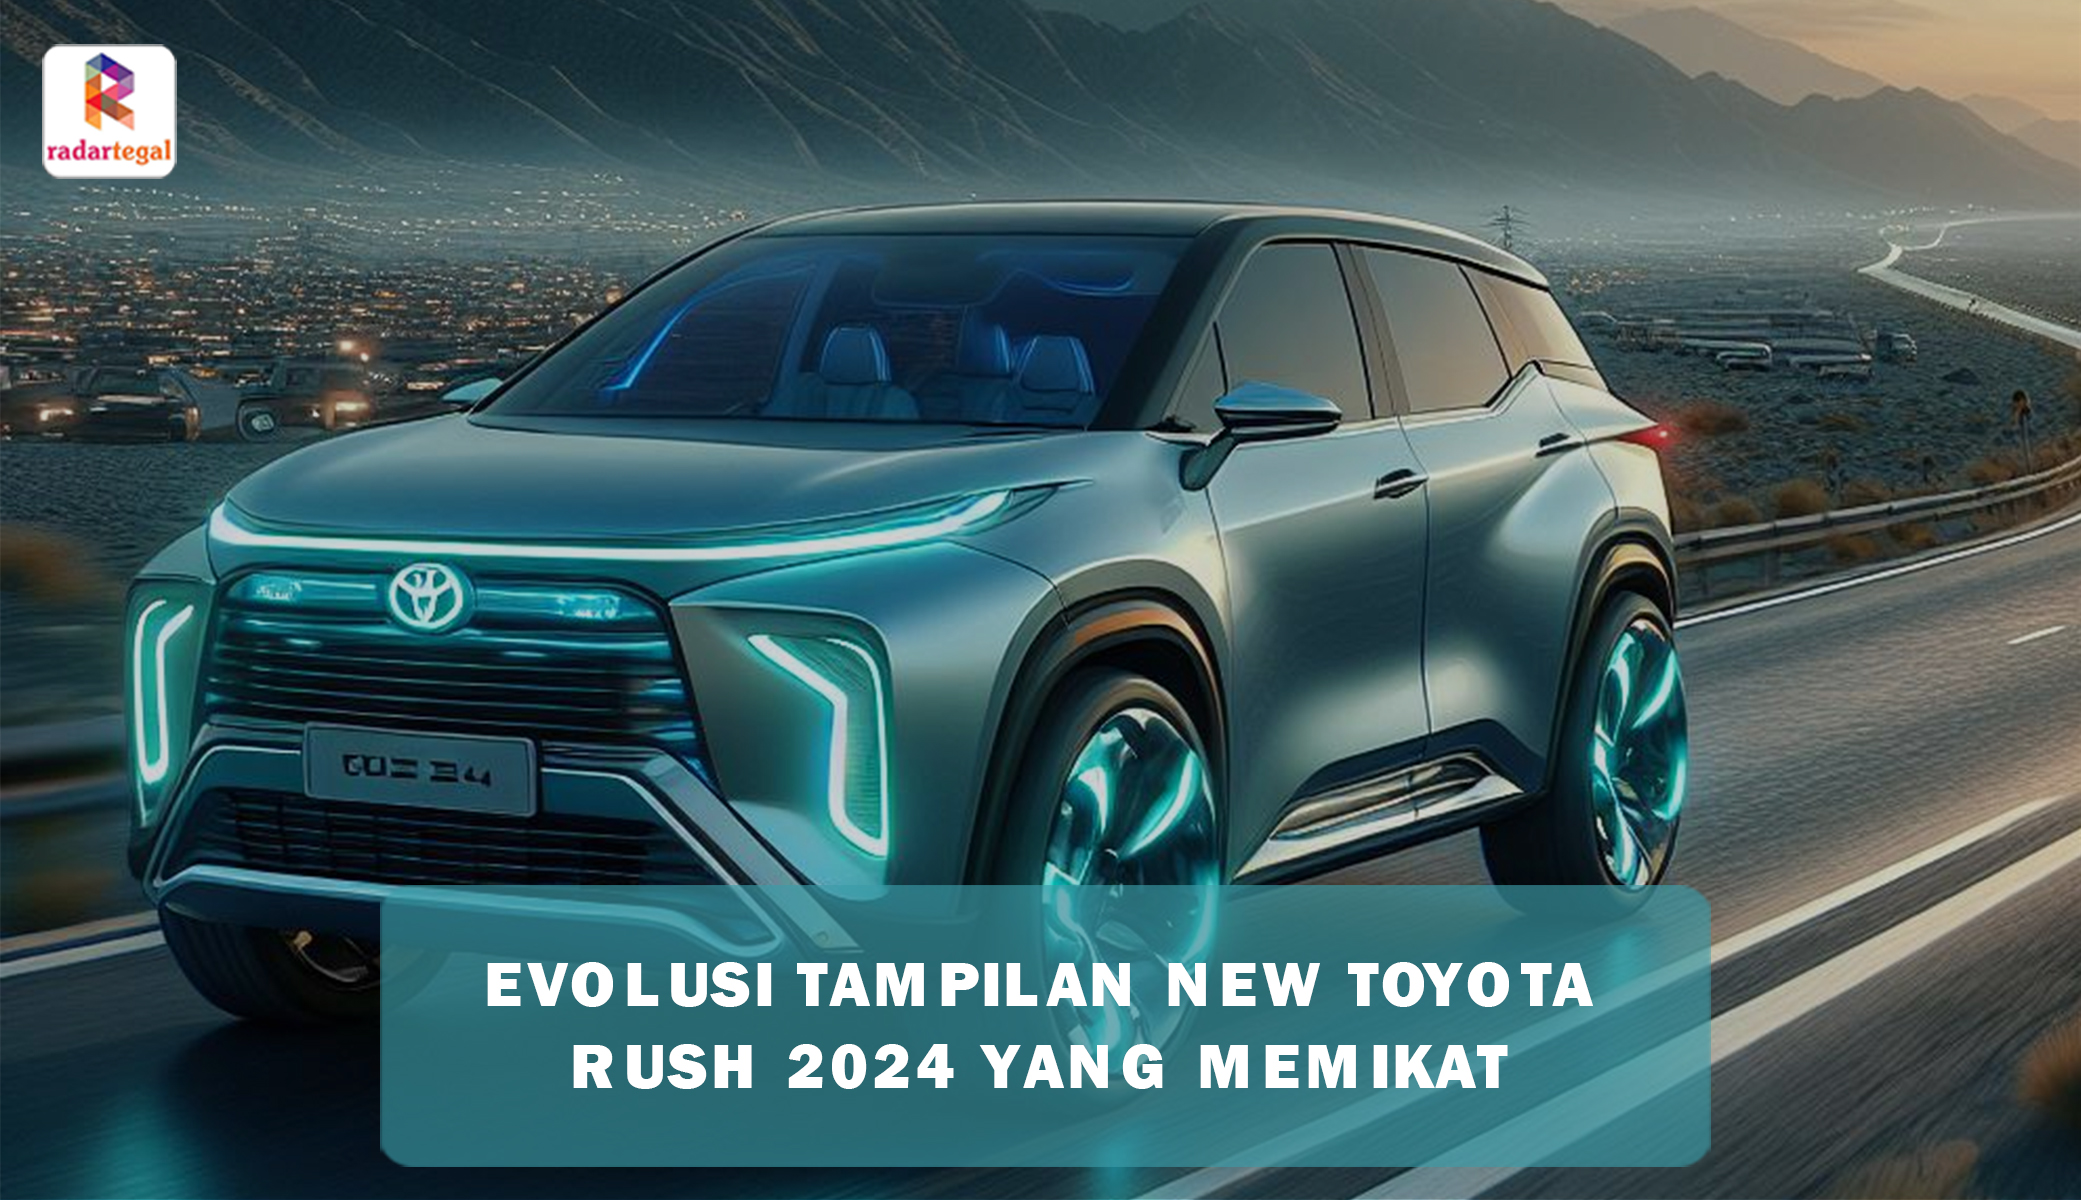 Evolusi Tampilan New Toyota Rush 2024 Bikin Hati Terpikat, Fitur Baru yang Melekat Membuat Banyak Orang Minat